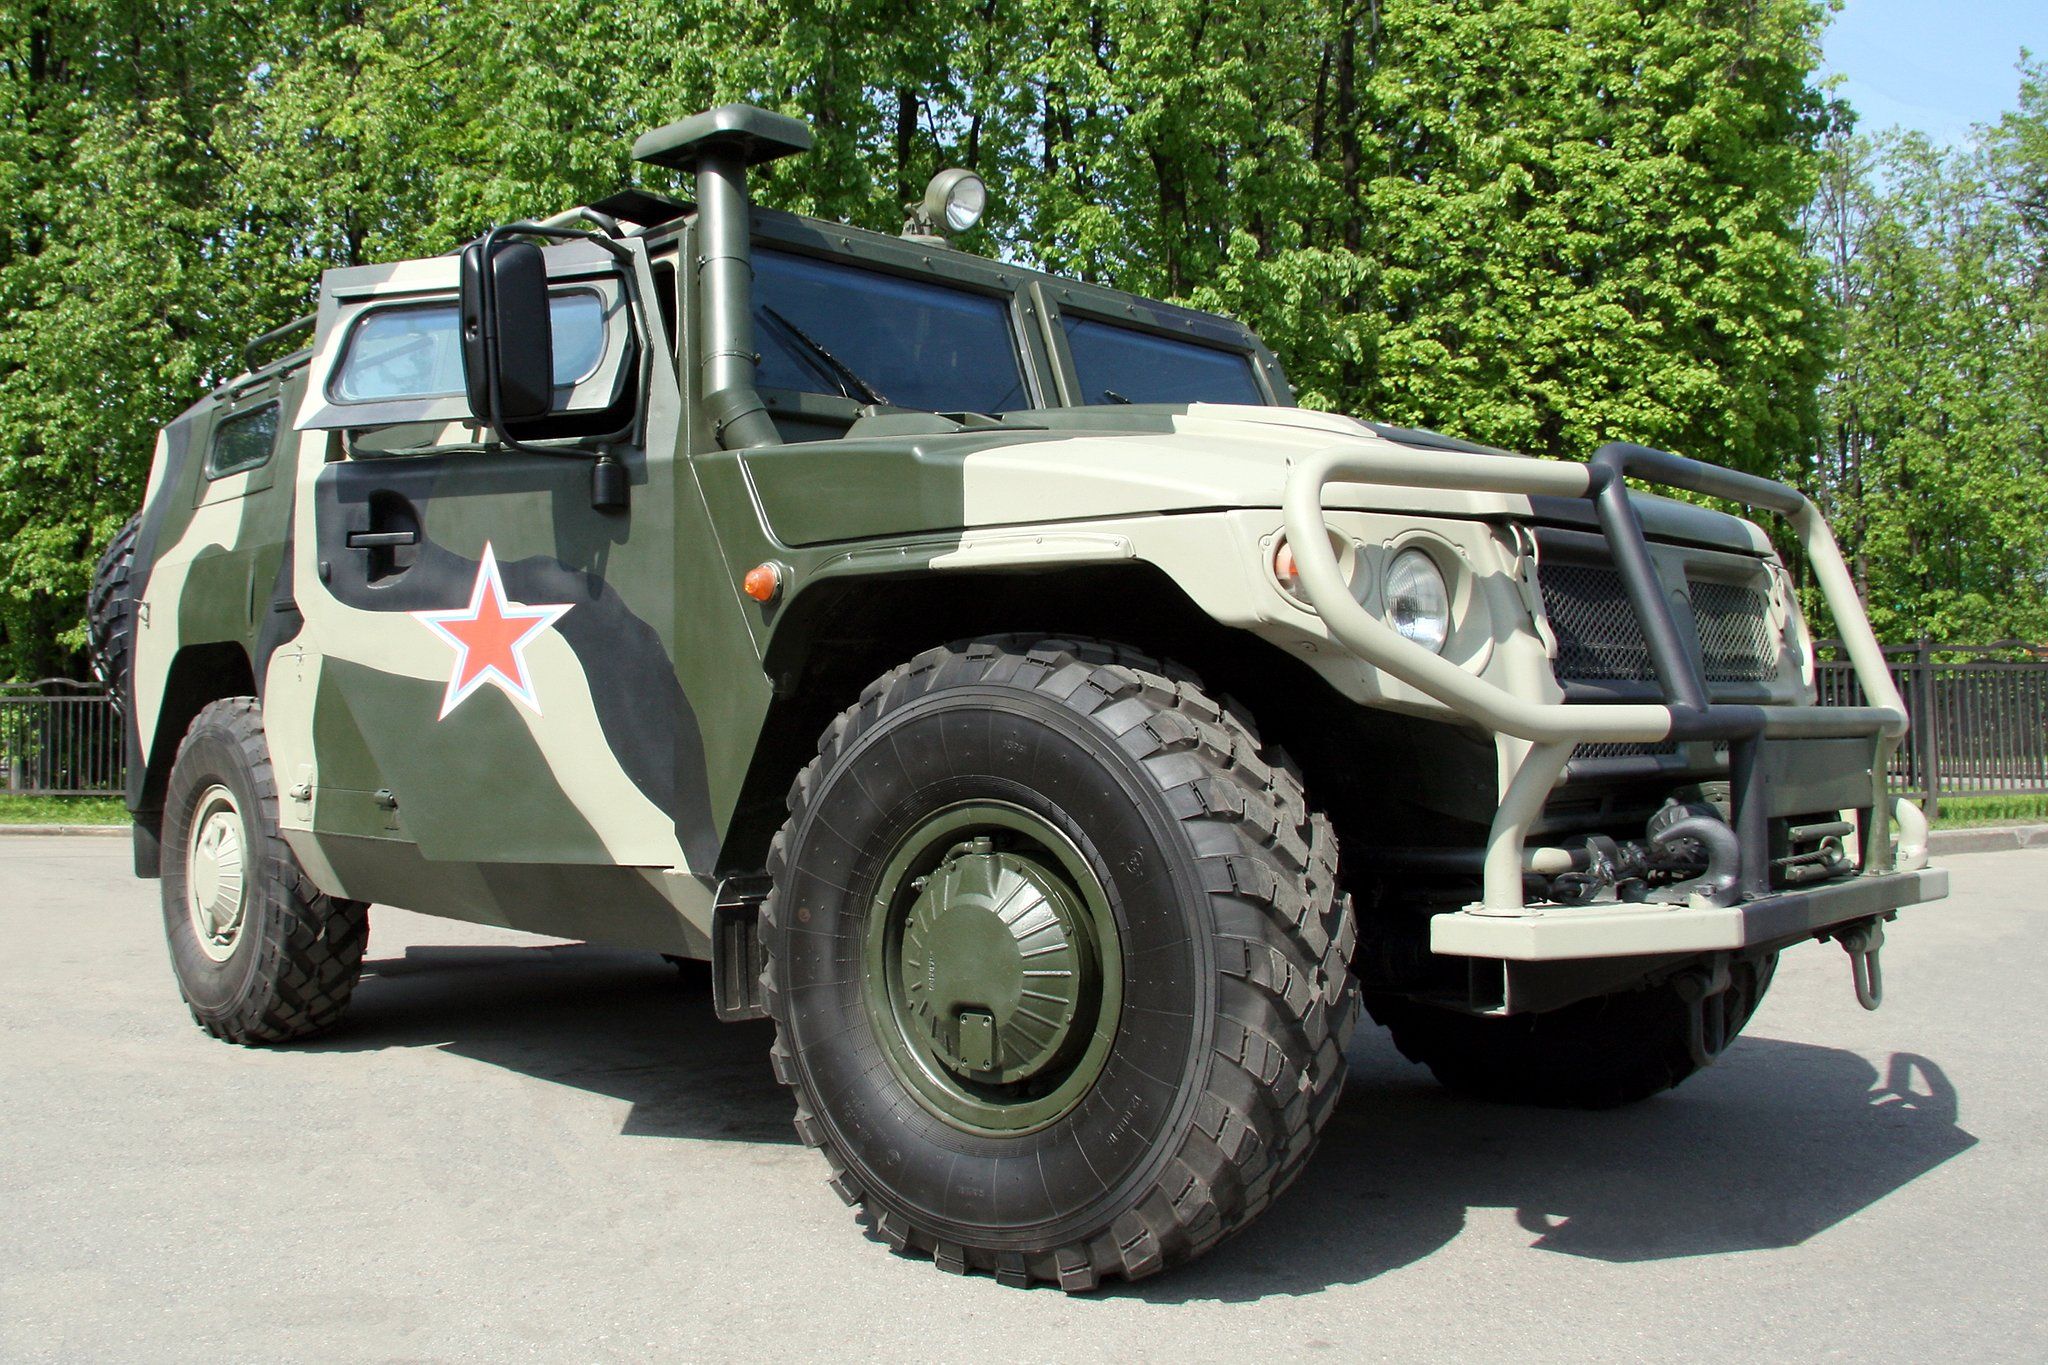 2005 GAZ 233036 SPM 2 Tiger military police emergency 4x4 awd swat